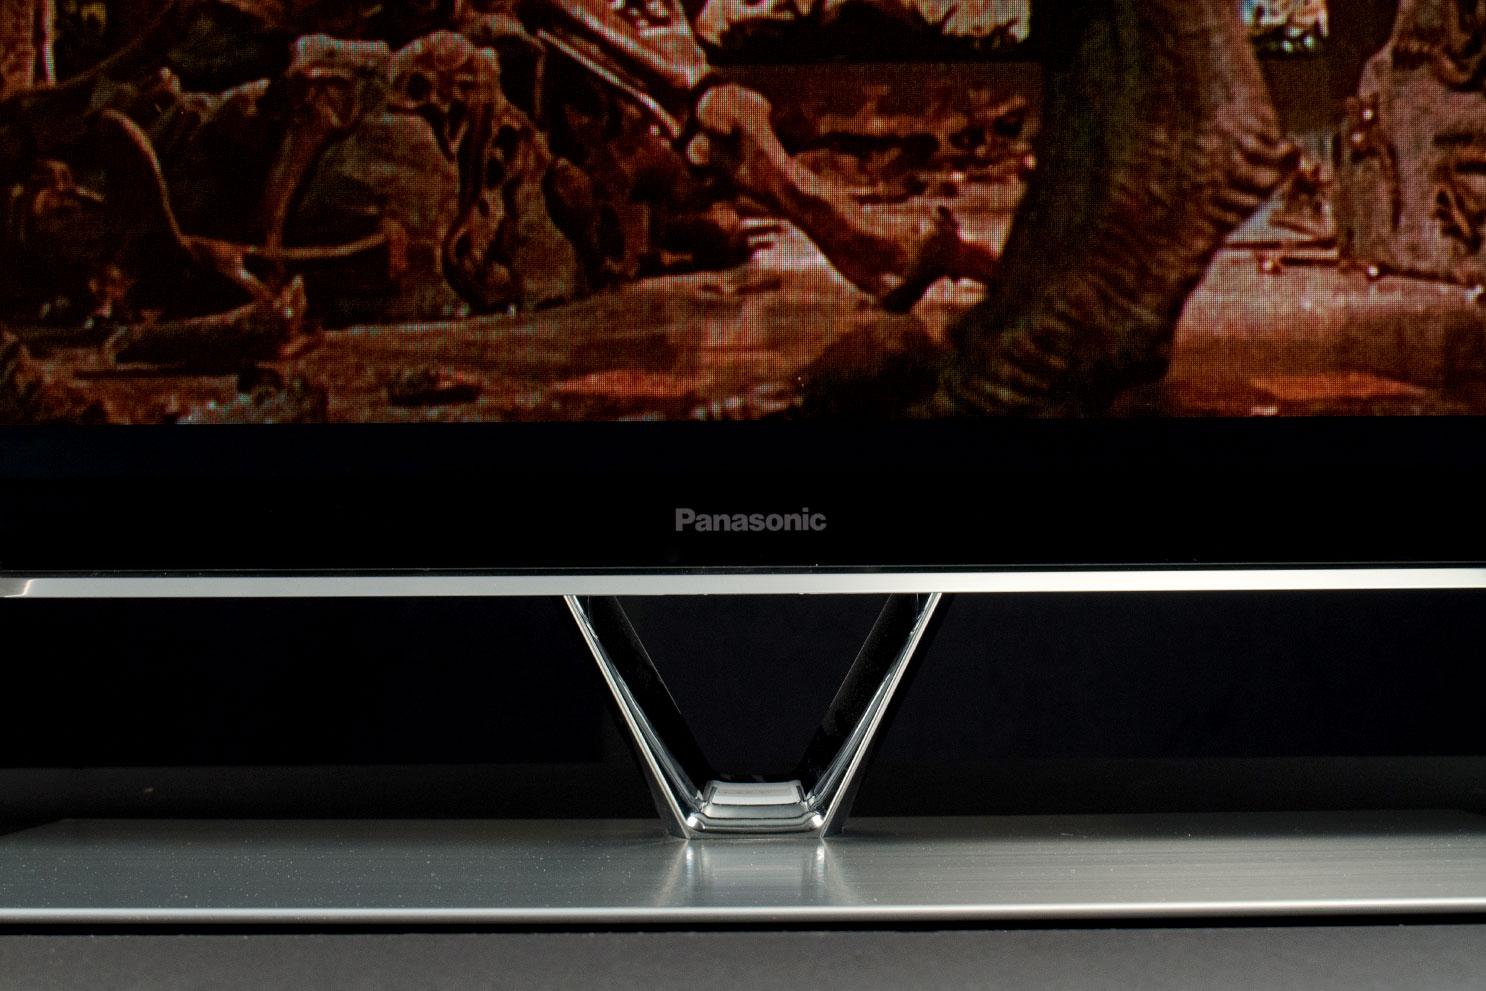 Panasonic Viera TC-P65ST60 Plasma TV Review - Reviewed